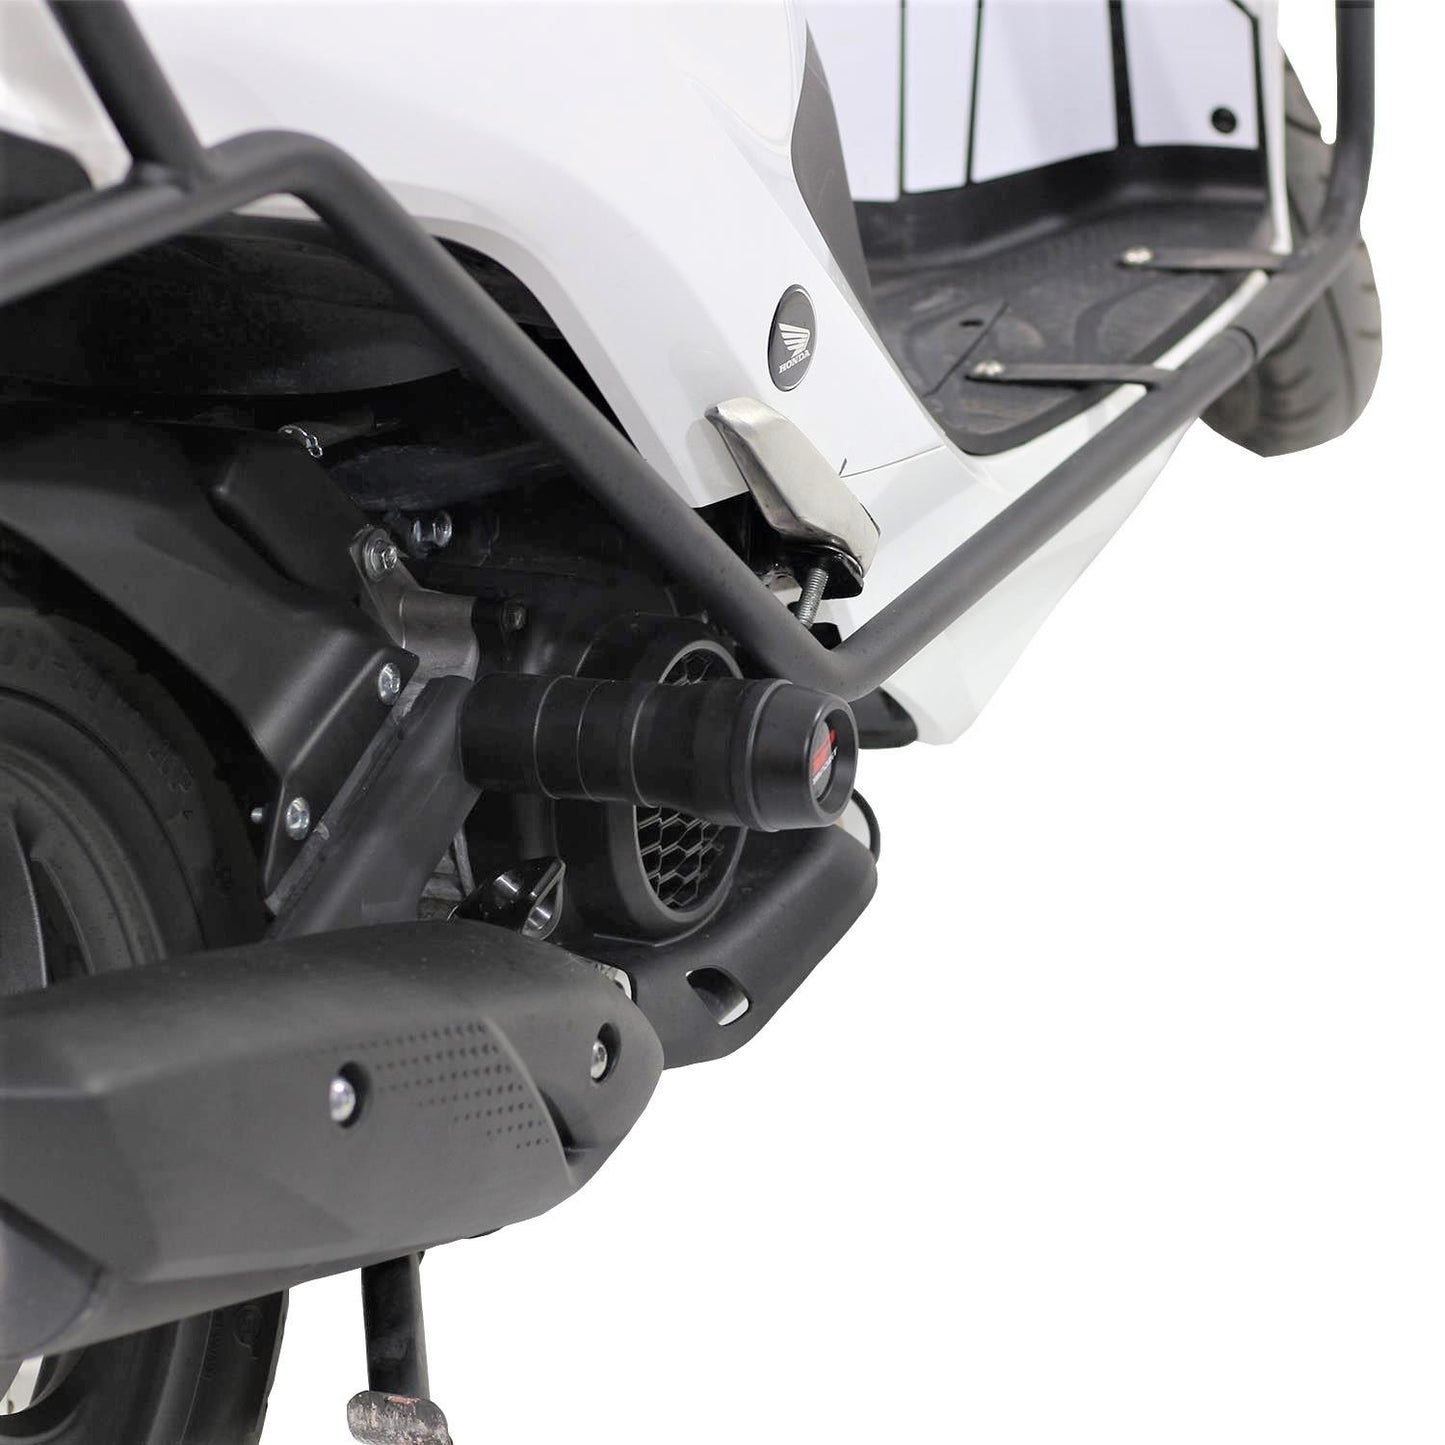 Honda Vision 110 Vision110 Exhaust Slider Muffler Guard Protector 21-23